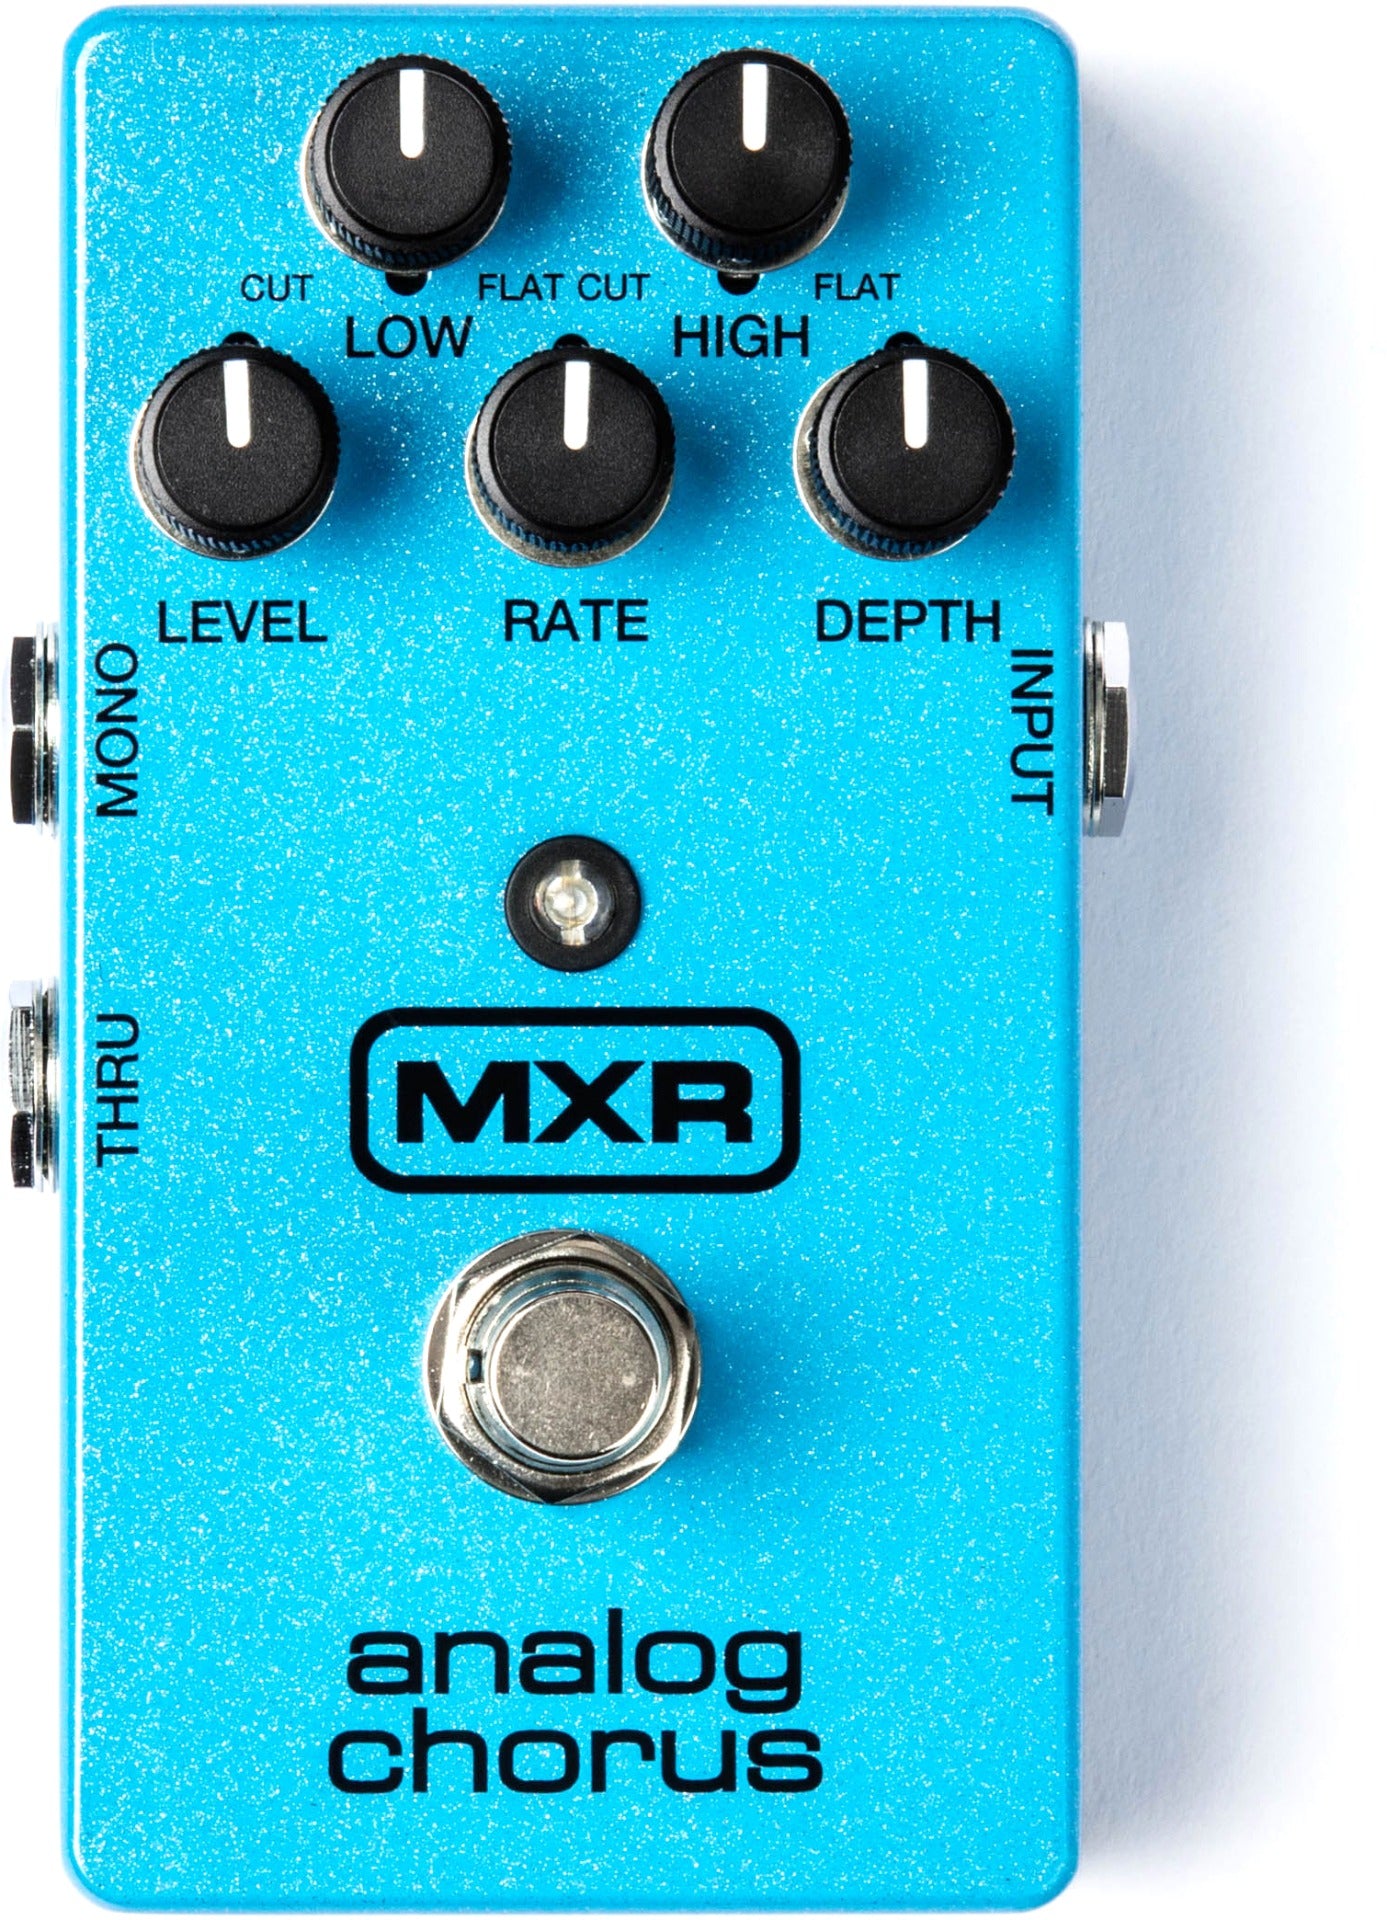 MXR Analog Chorus M234 Guitar Pedal